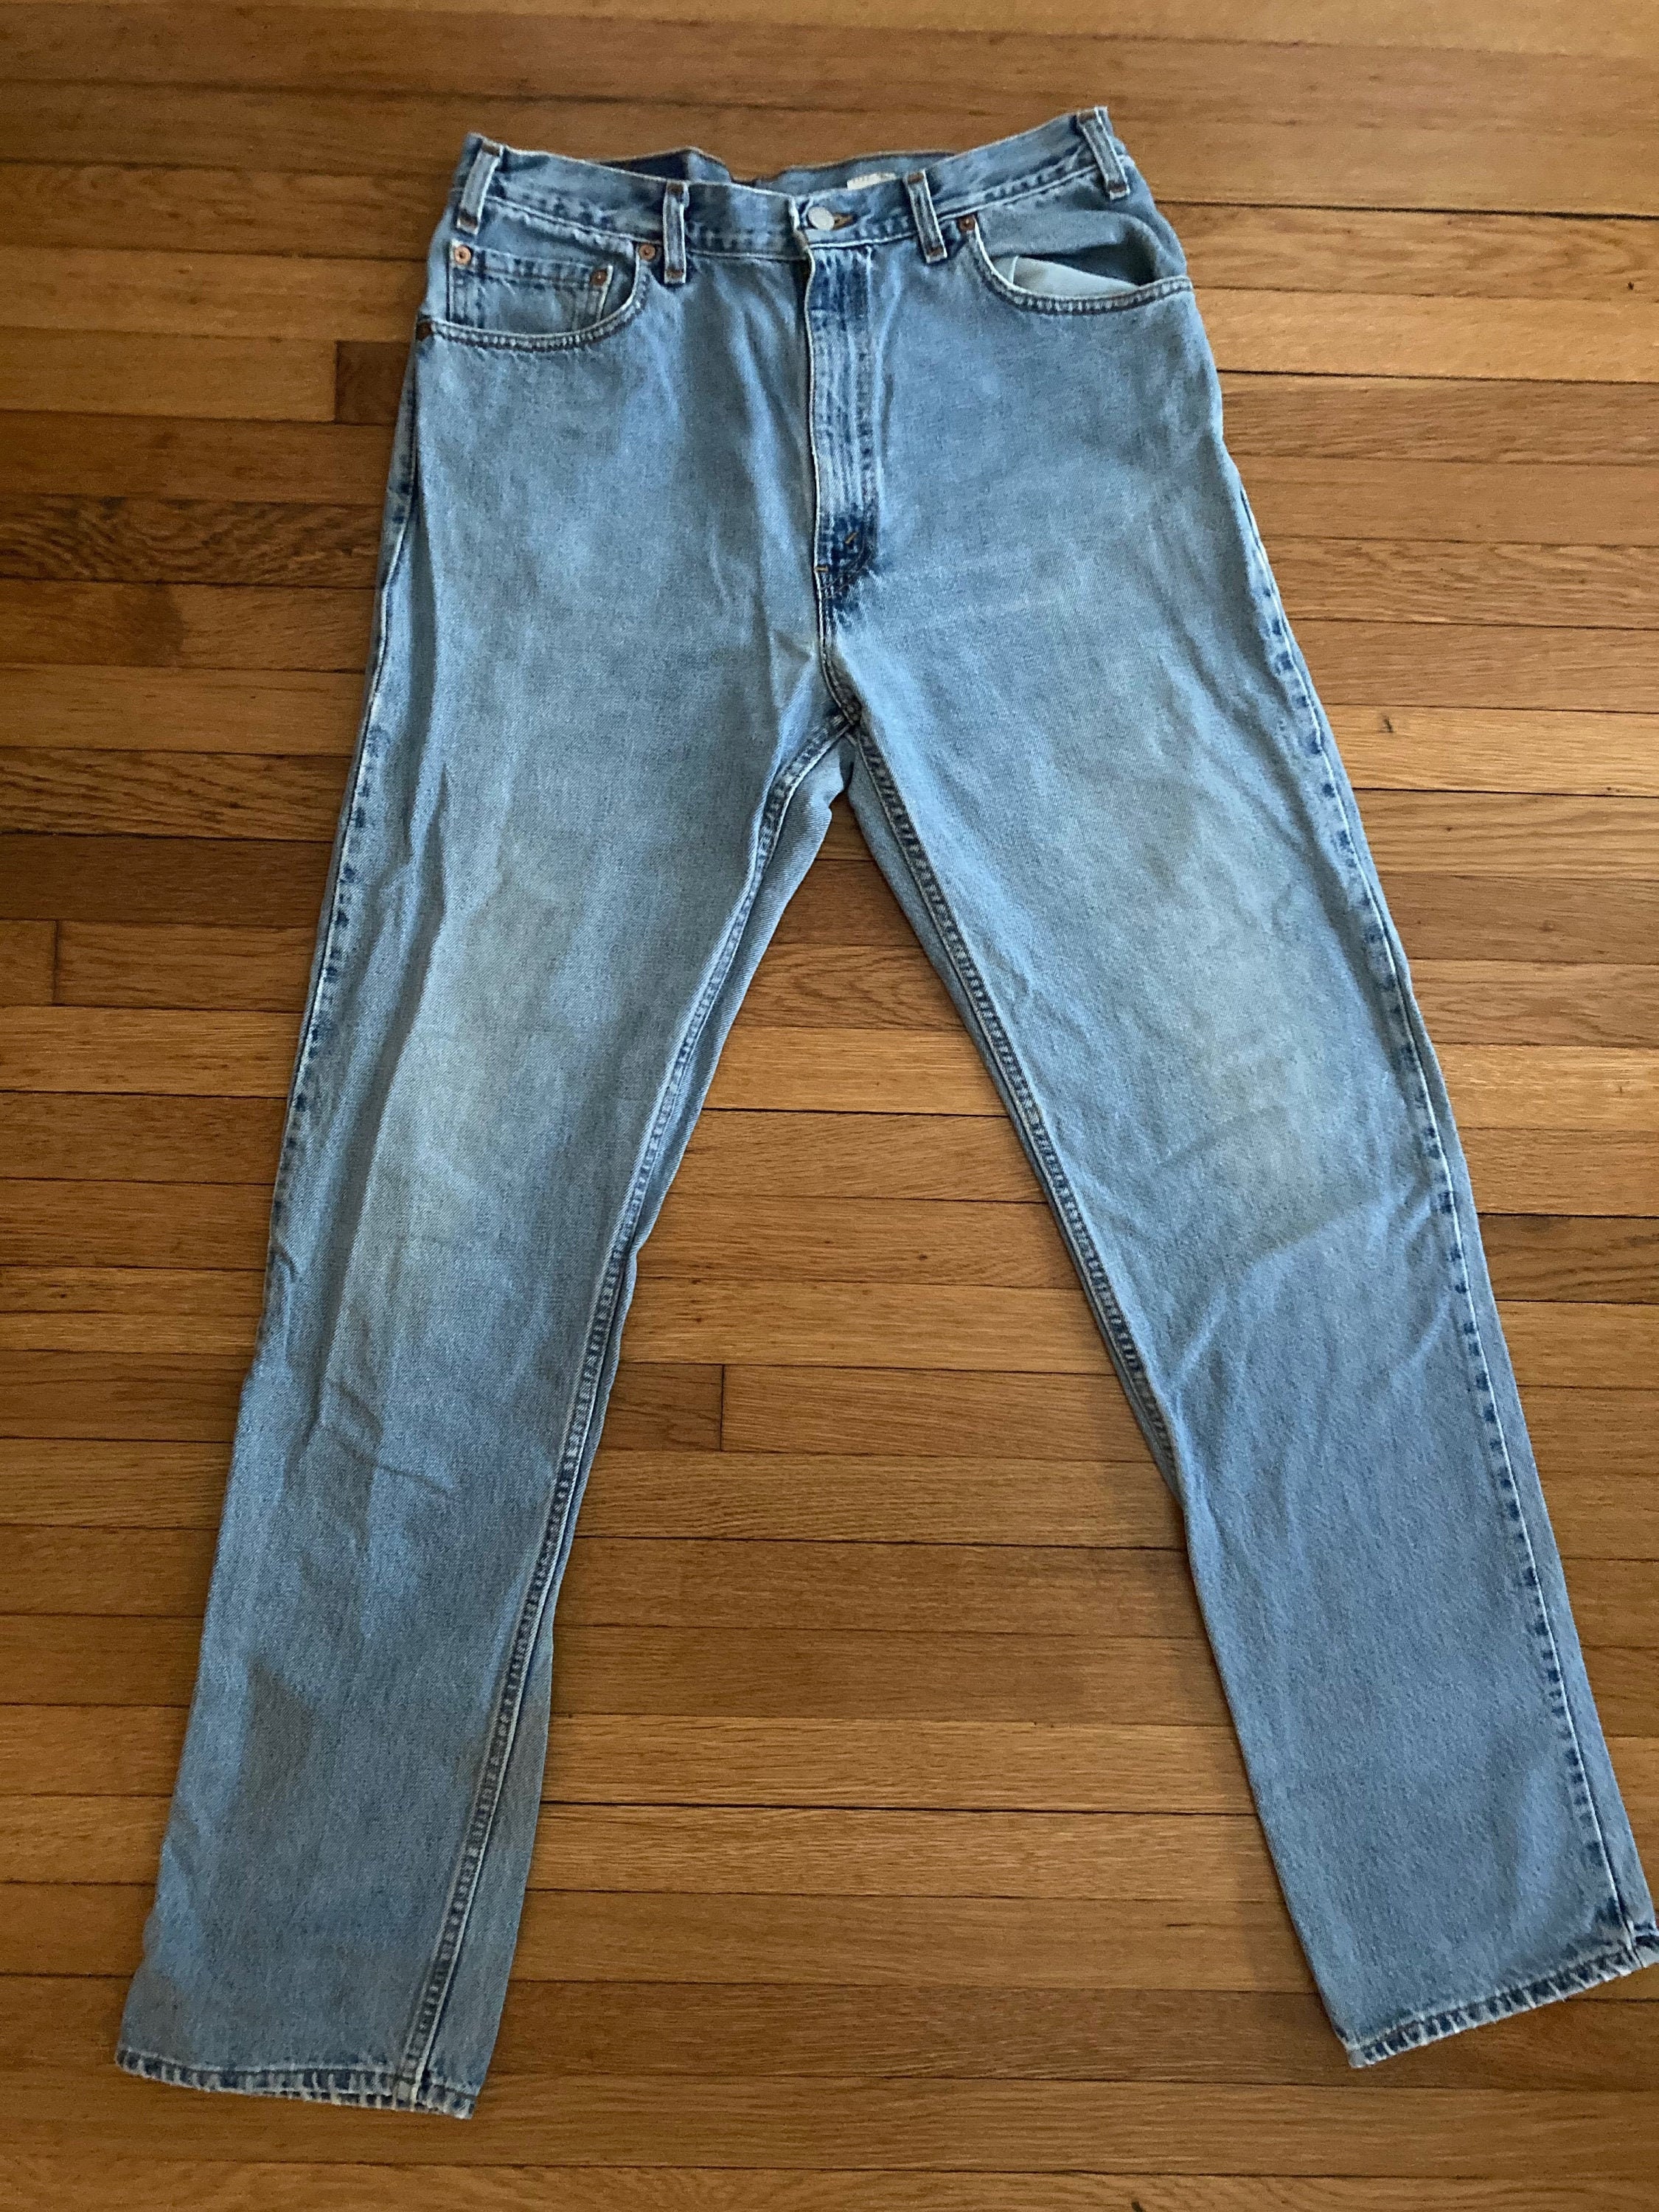 Vintage Levi's Jeans 505 Orange Label Dad Mom Boyfriend Jeans Late 80s Early 90s waist 36" inseam 28" Made in USA Abbigliamento Abbigliamento genere neutro per adulti Jeans 